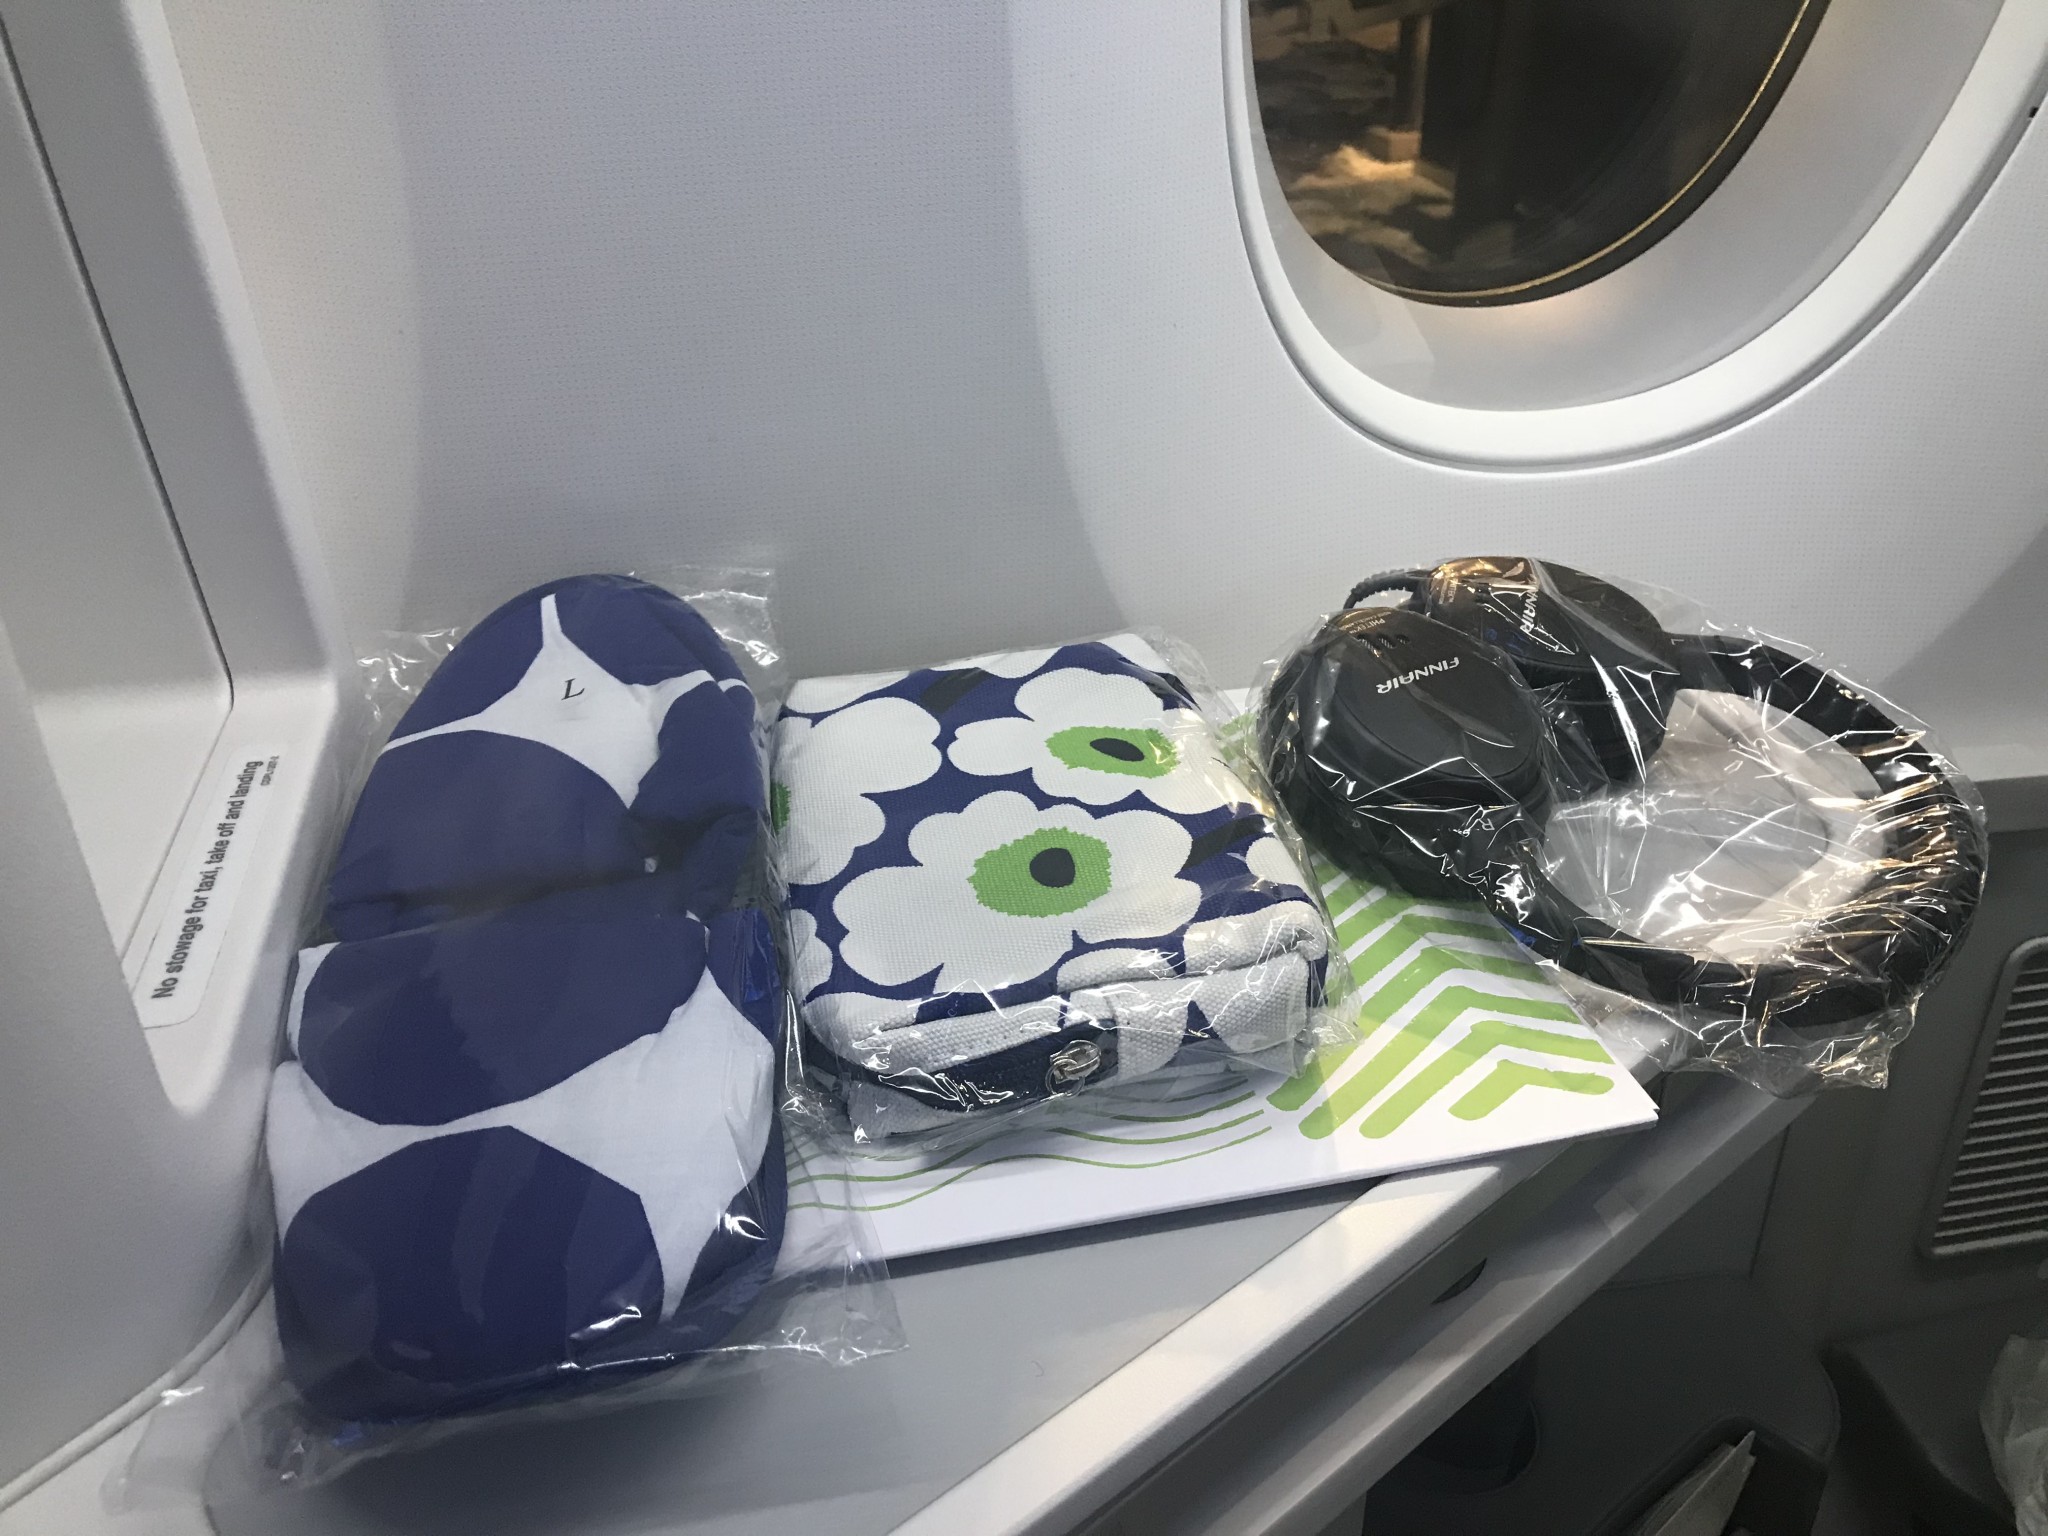 Amenities on board Finnair business class flight